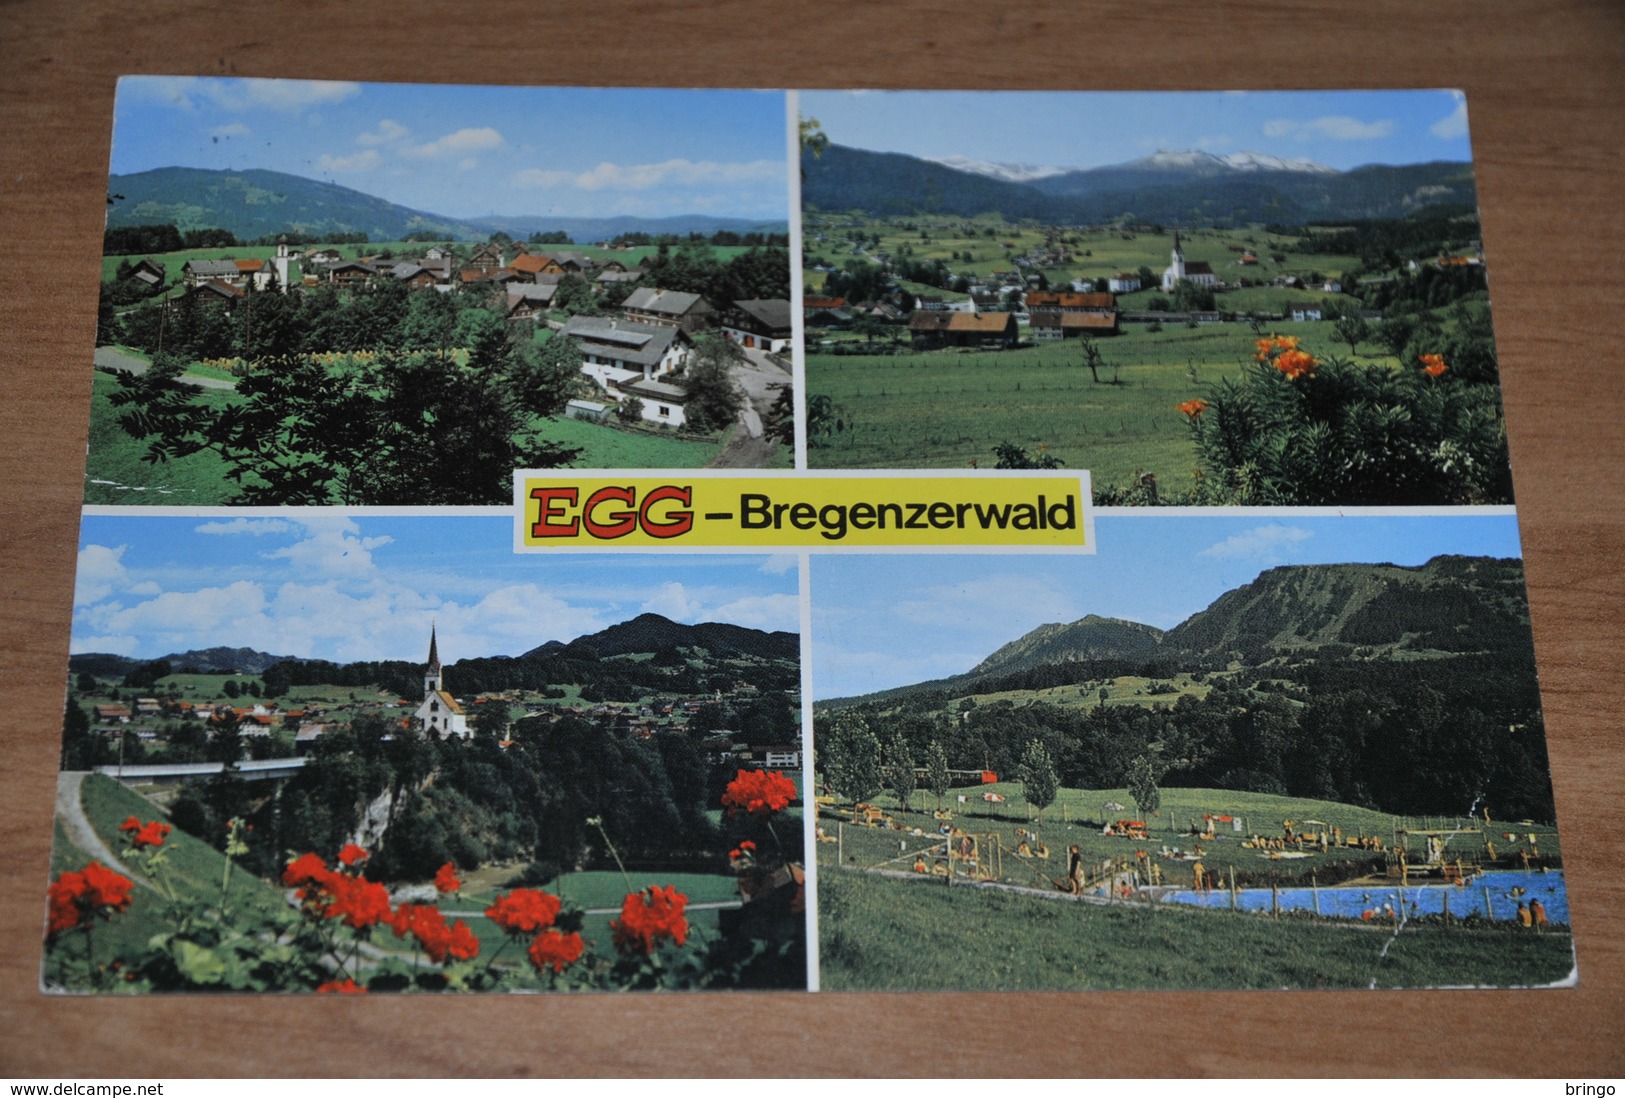 2206- Egg  Bregenzerwald - Bregenzerwaldorte